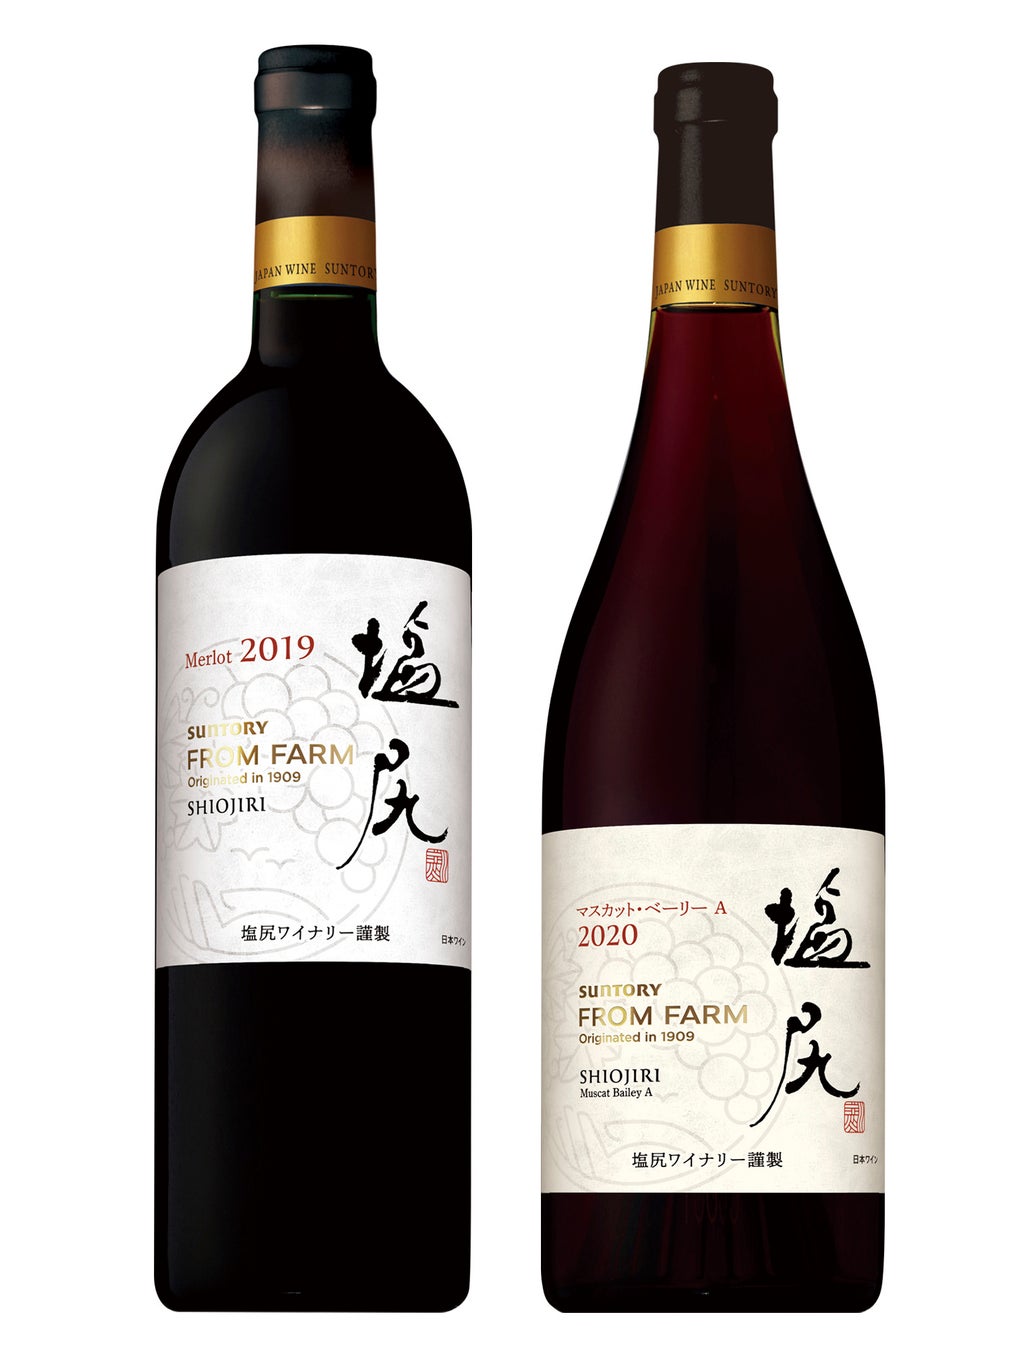 日本ワイン新ヴィンテージ「ＳＵＮＴＯＲＹ ＦＲＯＭ ＦＡＲＭ 塩尻メルロ ２０１９」「同 塩尻マスカット・ベーリーＡ ２０２０」数量限定新発売